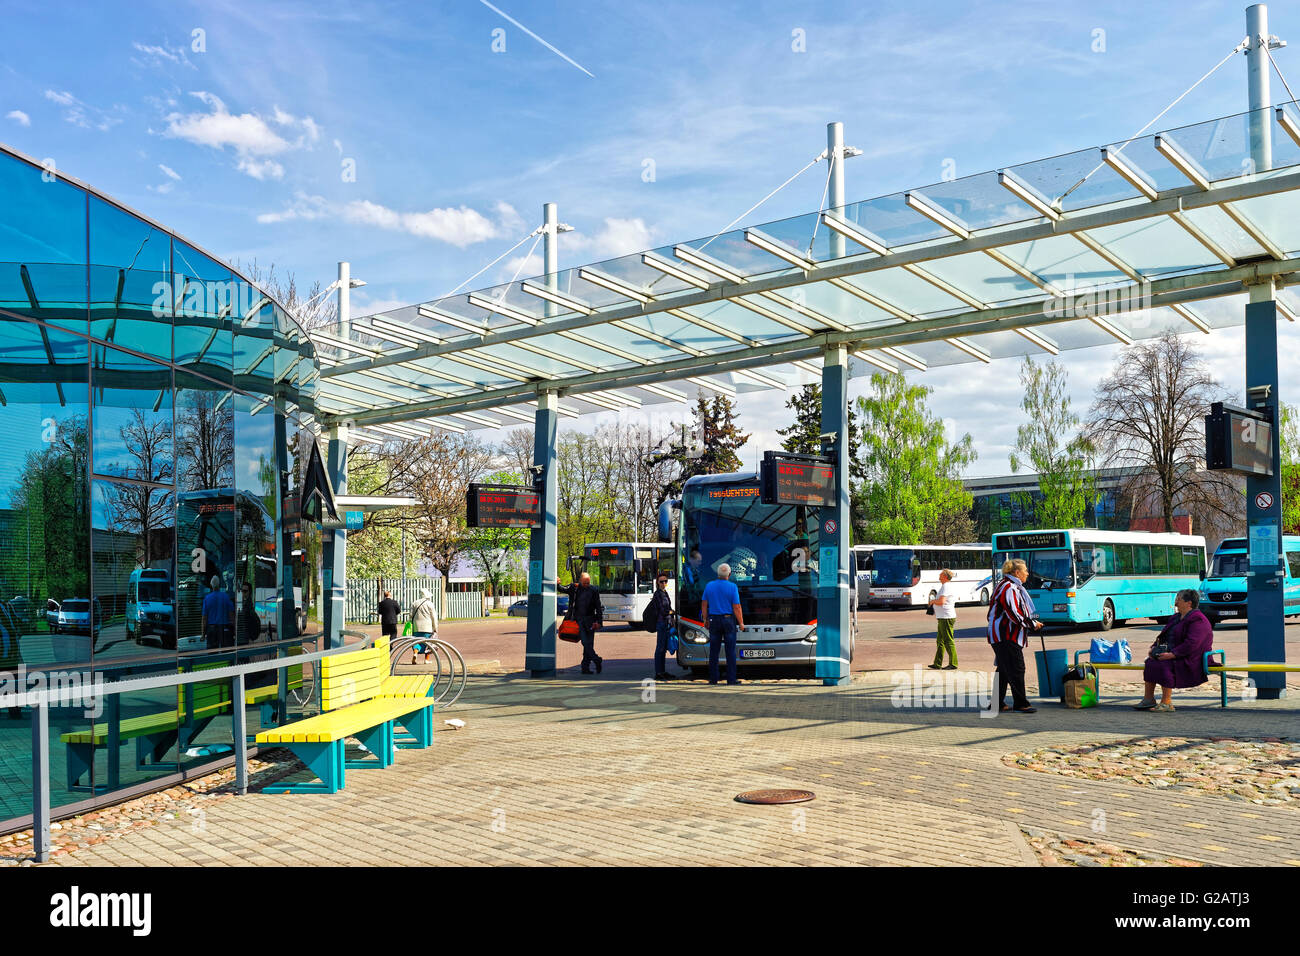 Ventspils, Lettland - 8. Mai 2016: Busbahnhof mit Passagieren in Ventspils in Lettland. Ventspils ist eine Stadt in Courland region Stockfoto